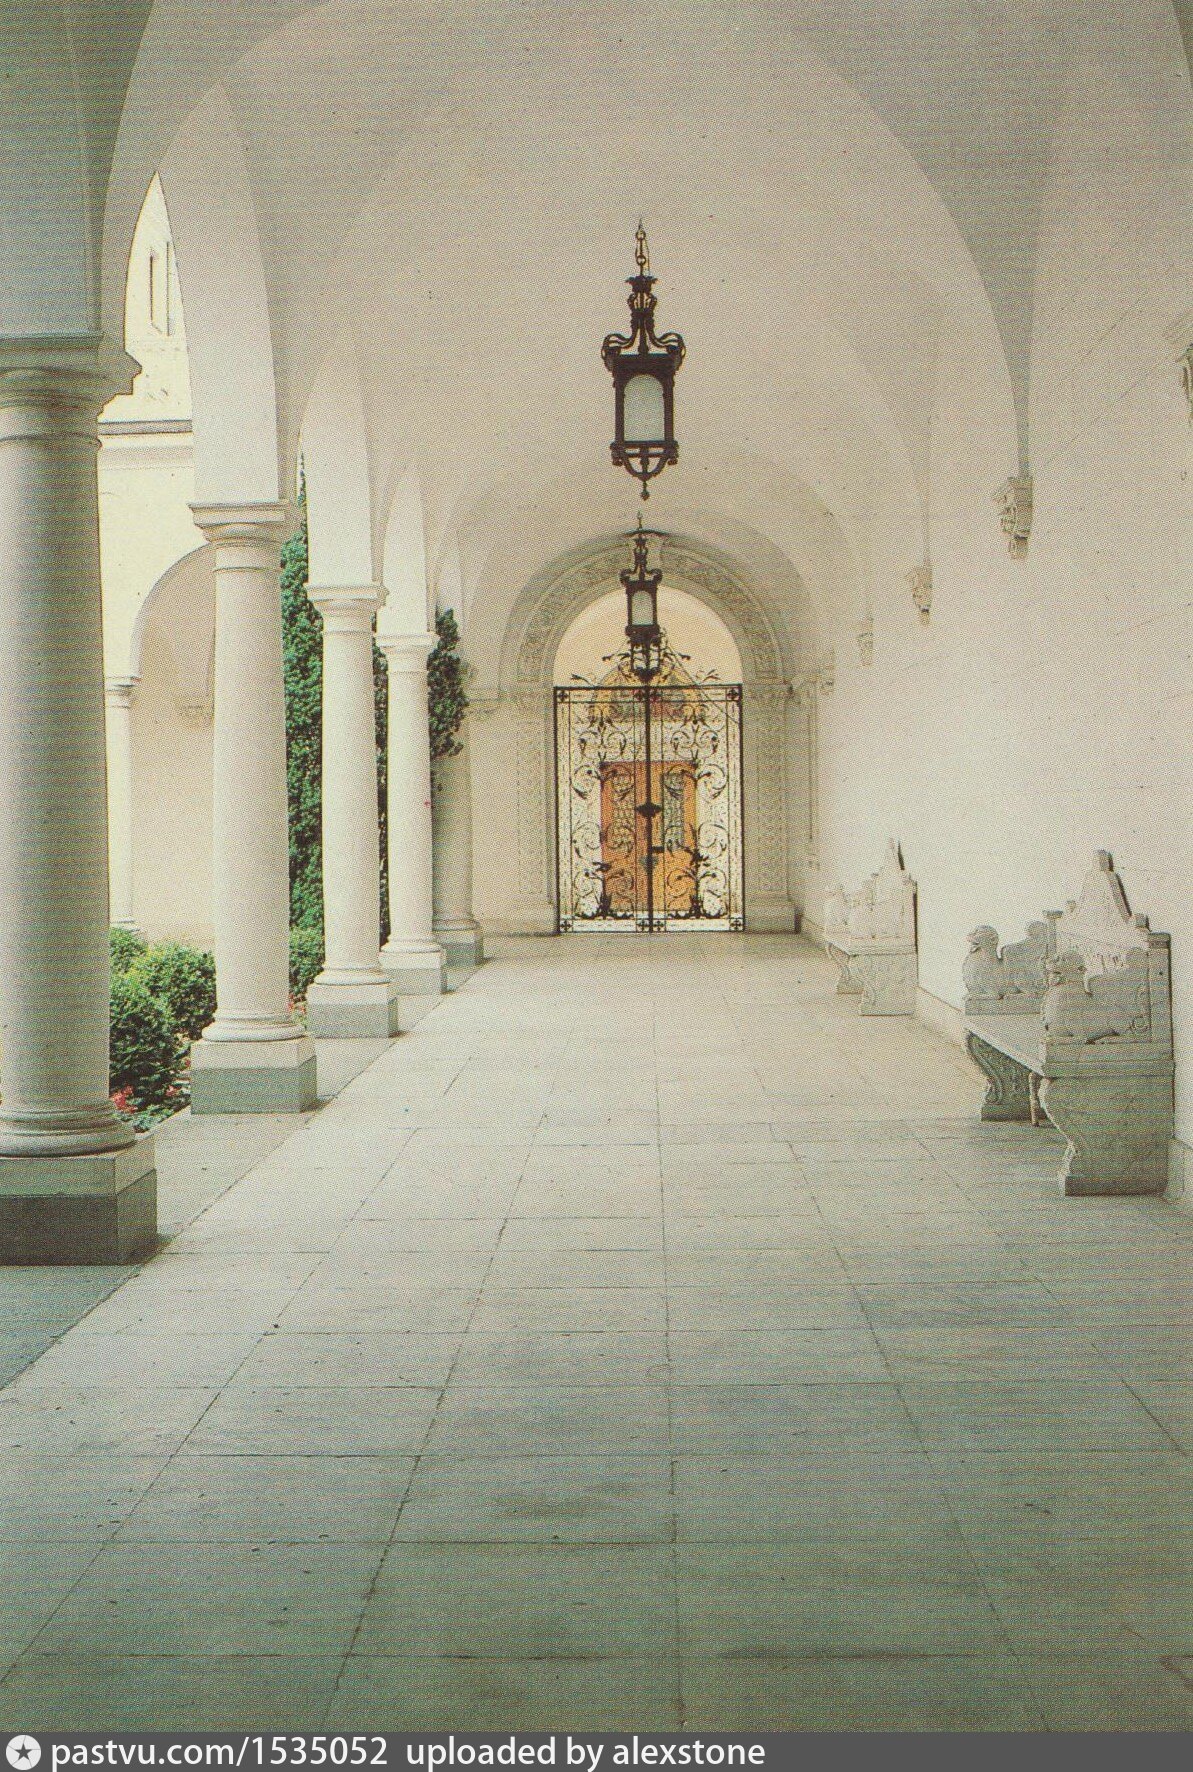 Ливадийский дворец итальянский дворик